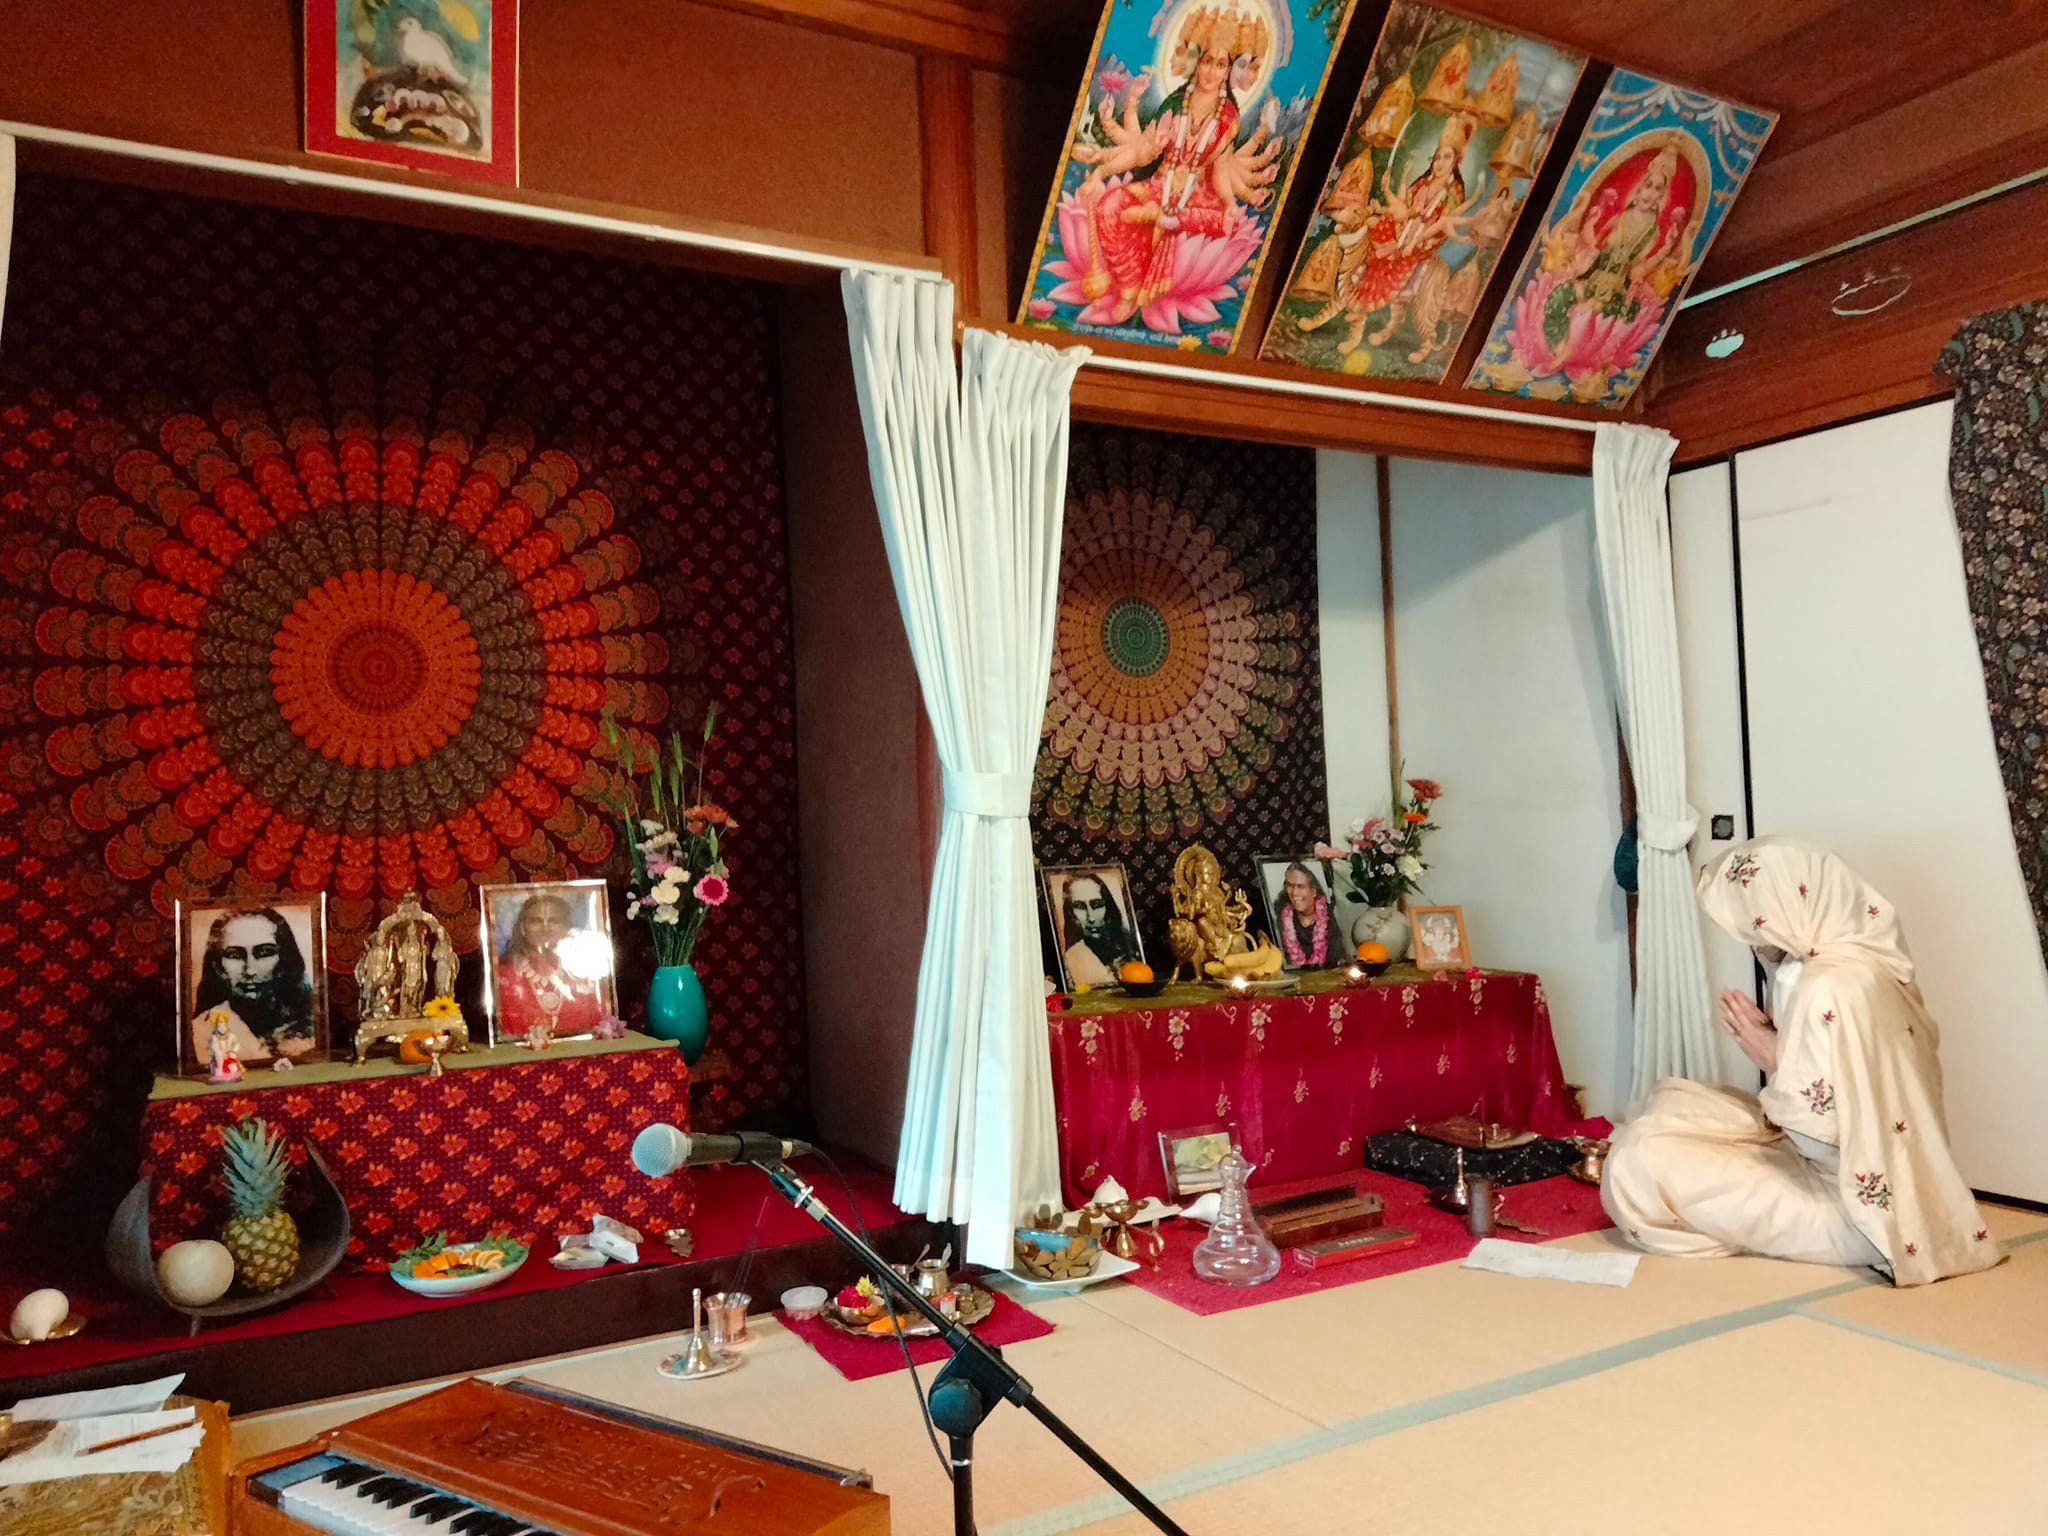 Puja Mantra Prayers